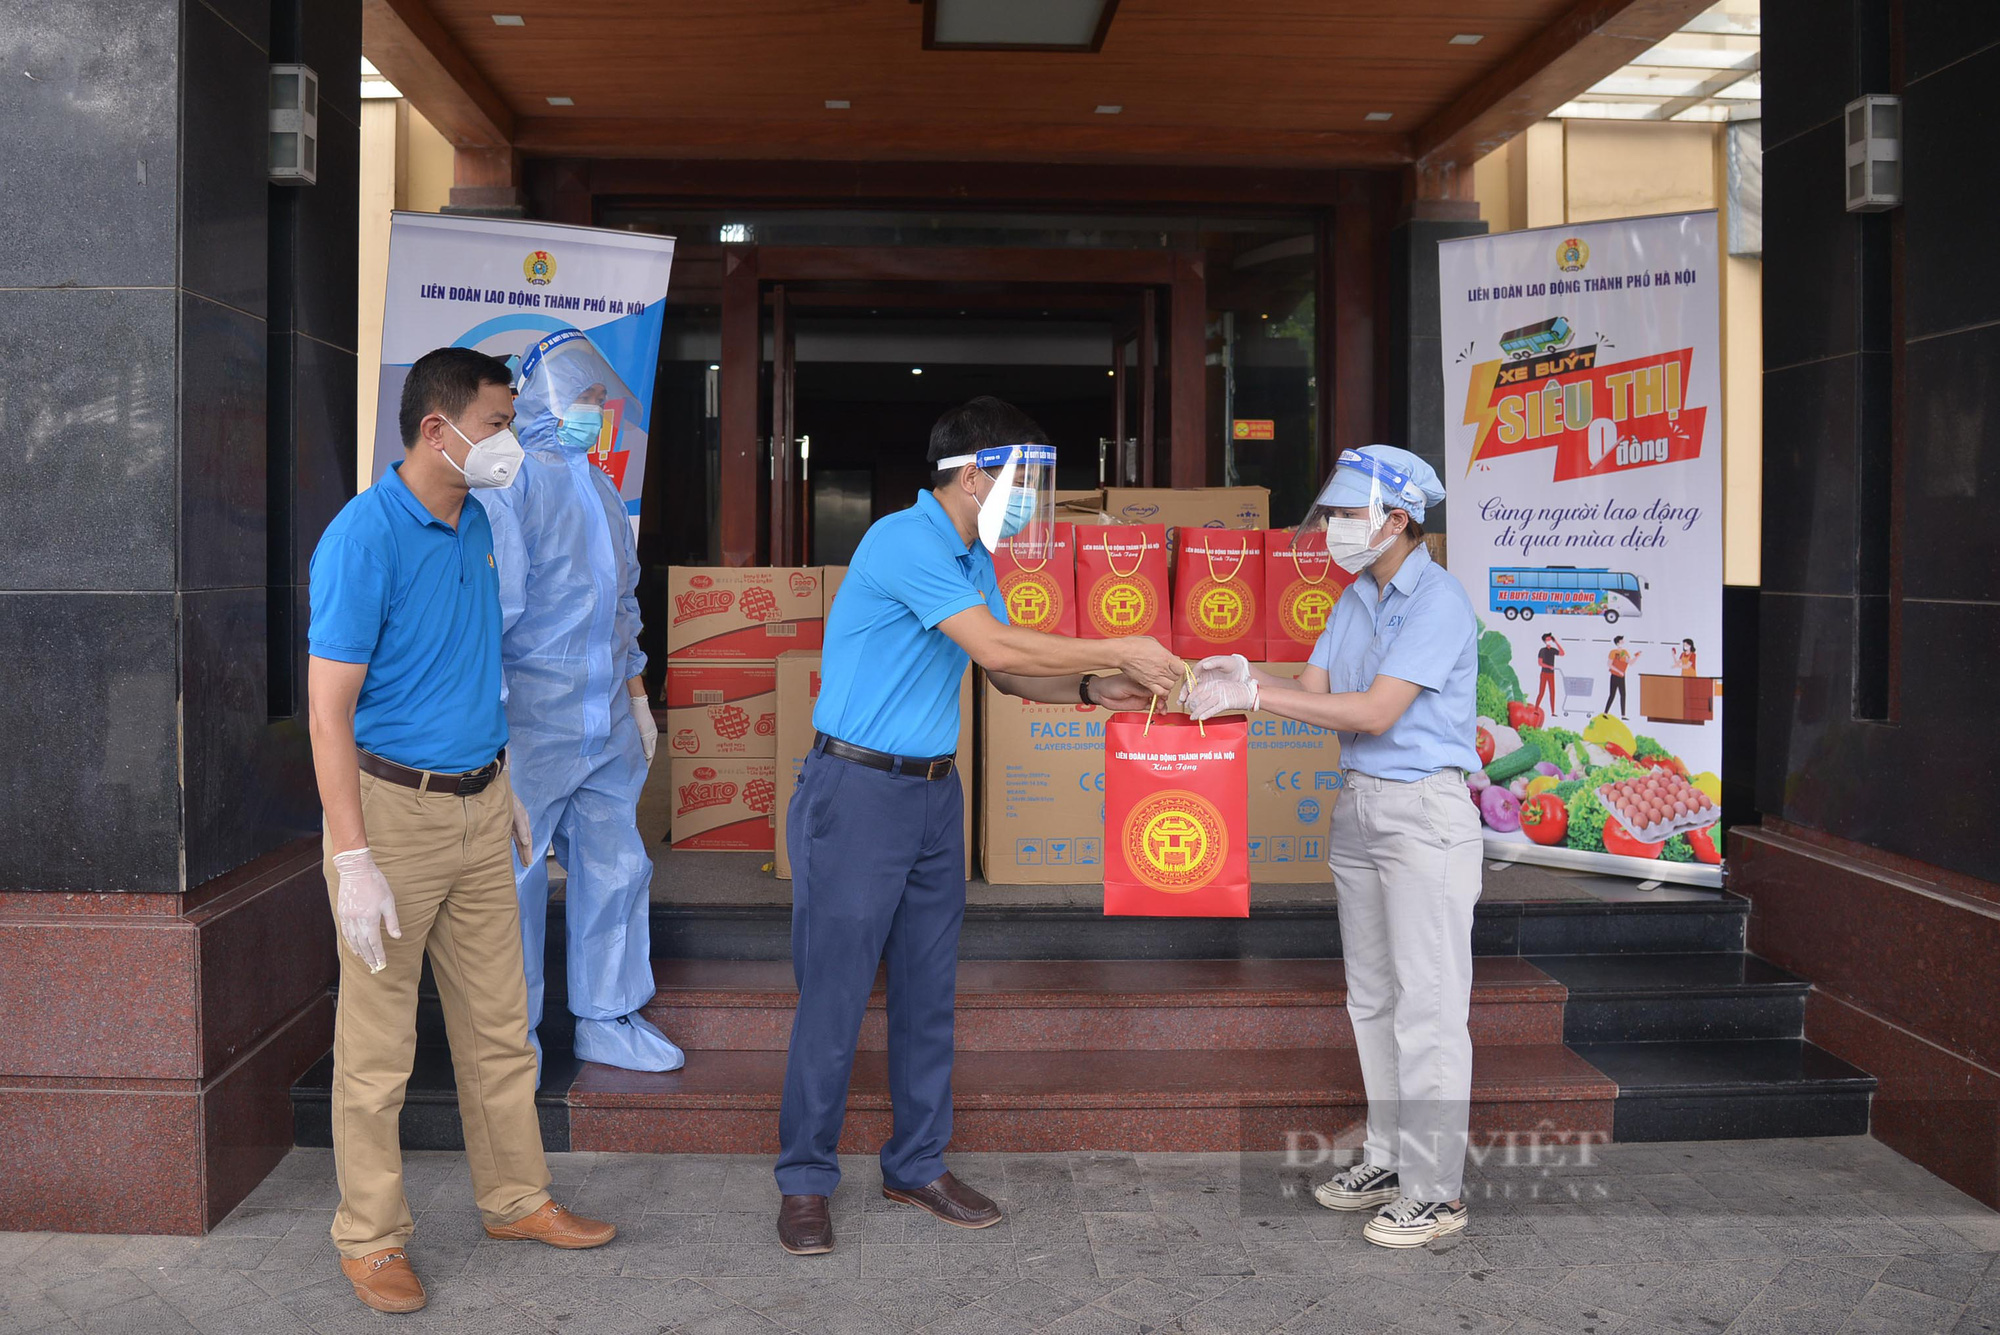 Cận cảnh “Xe buýt siêu thị 0 đồng” đầu tiên phục vụ CNLĐ khu công nghiệp Hà Nội - Ảnh 4.